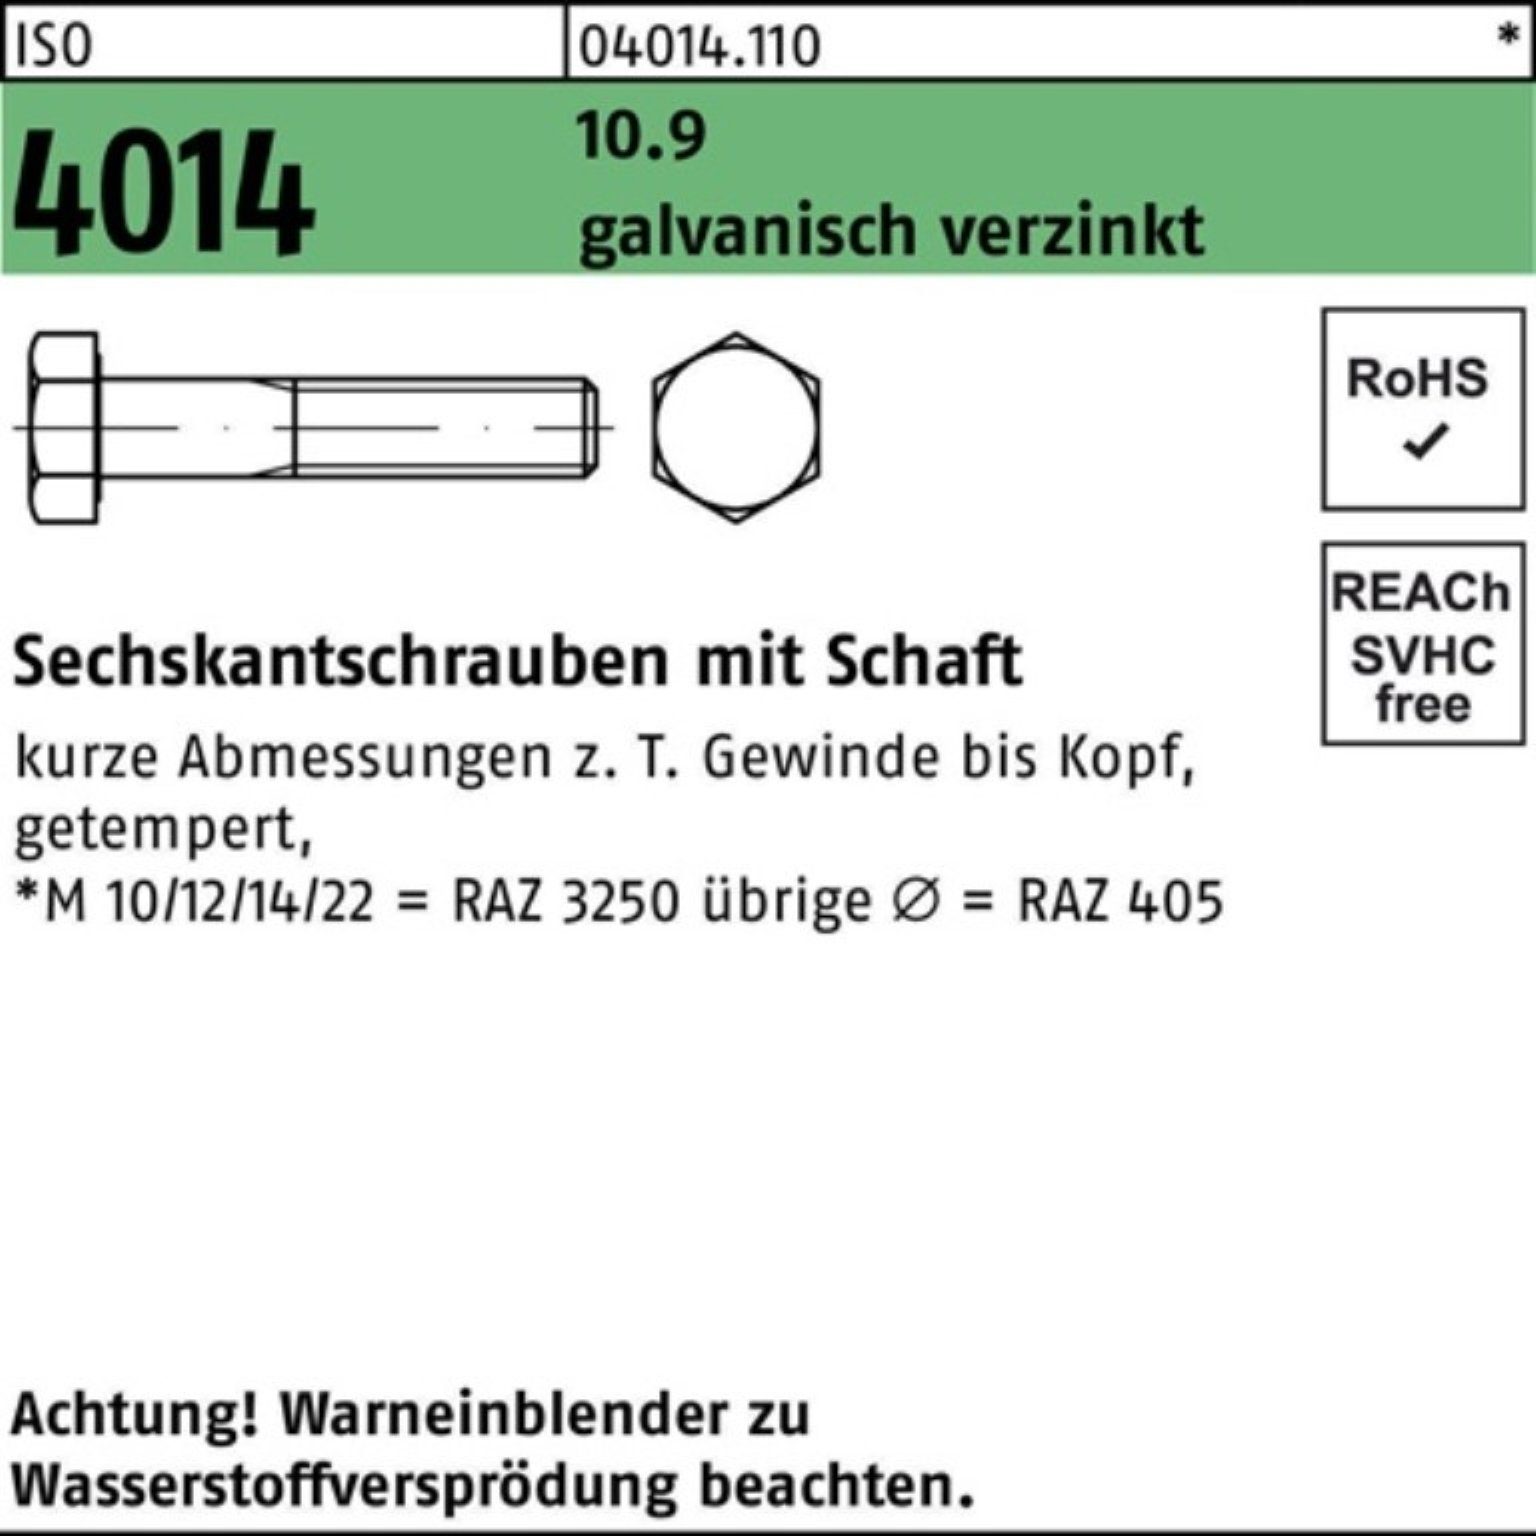 10.9 Bufab Sechskantschraube Schaft 70 ISO M14x Pack Sechskantschraube 100er 4014 galv.verz. 5